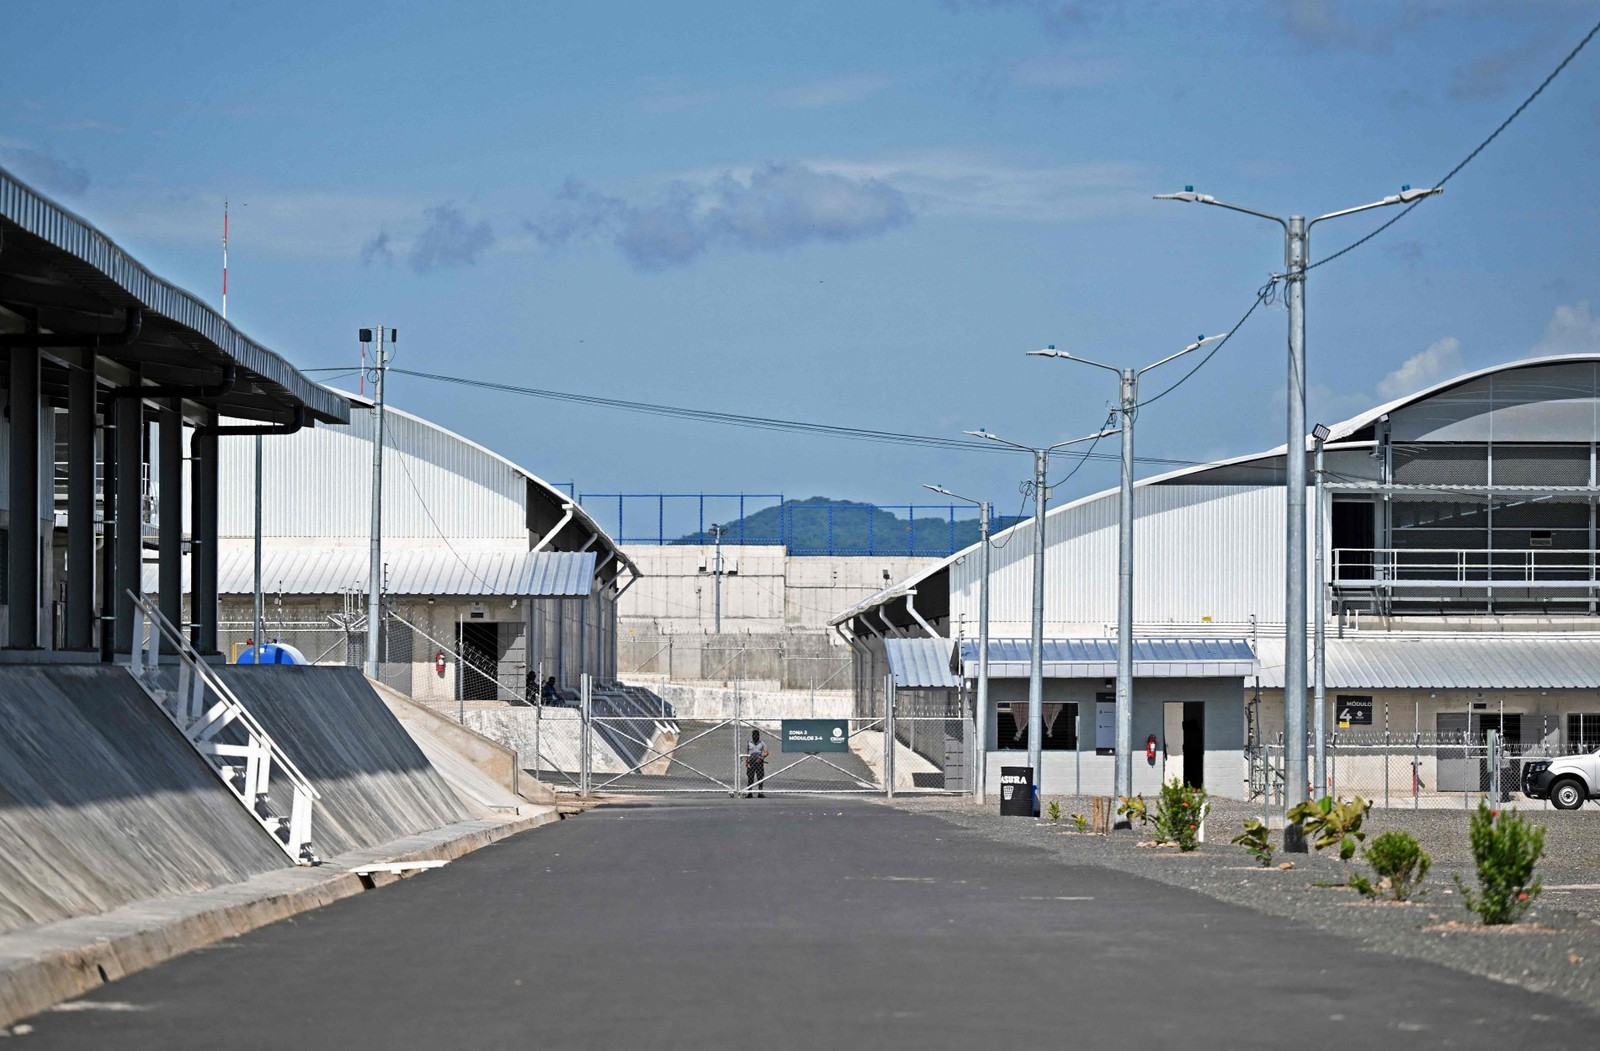 Detentos no maior centro penitenciário da América, situado em El Salvador — Foto: Marvin RECINOS / AFP